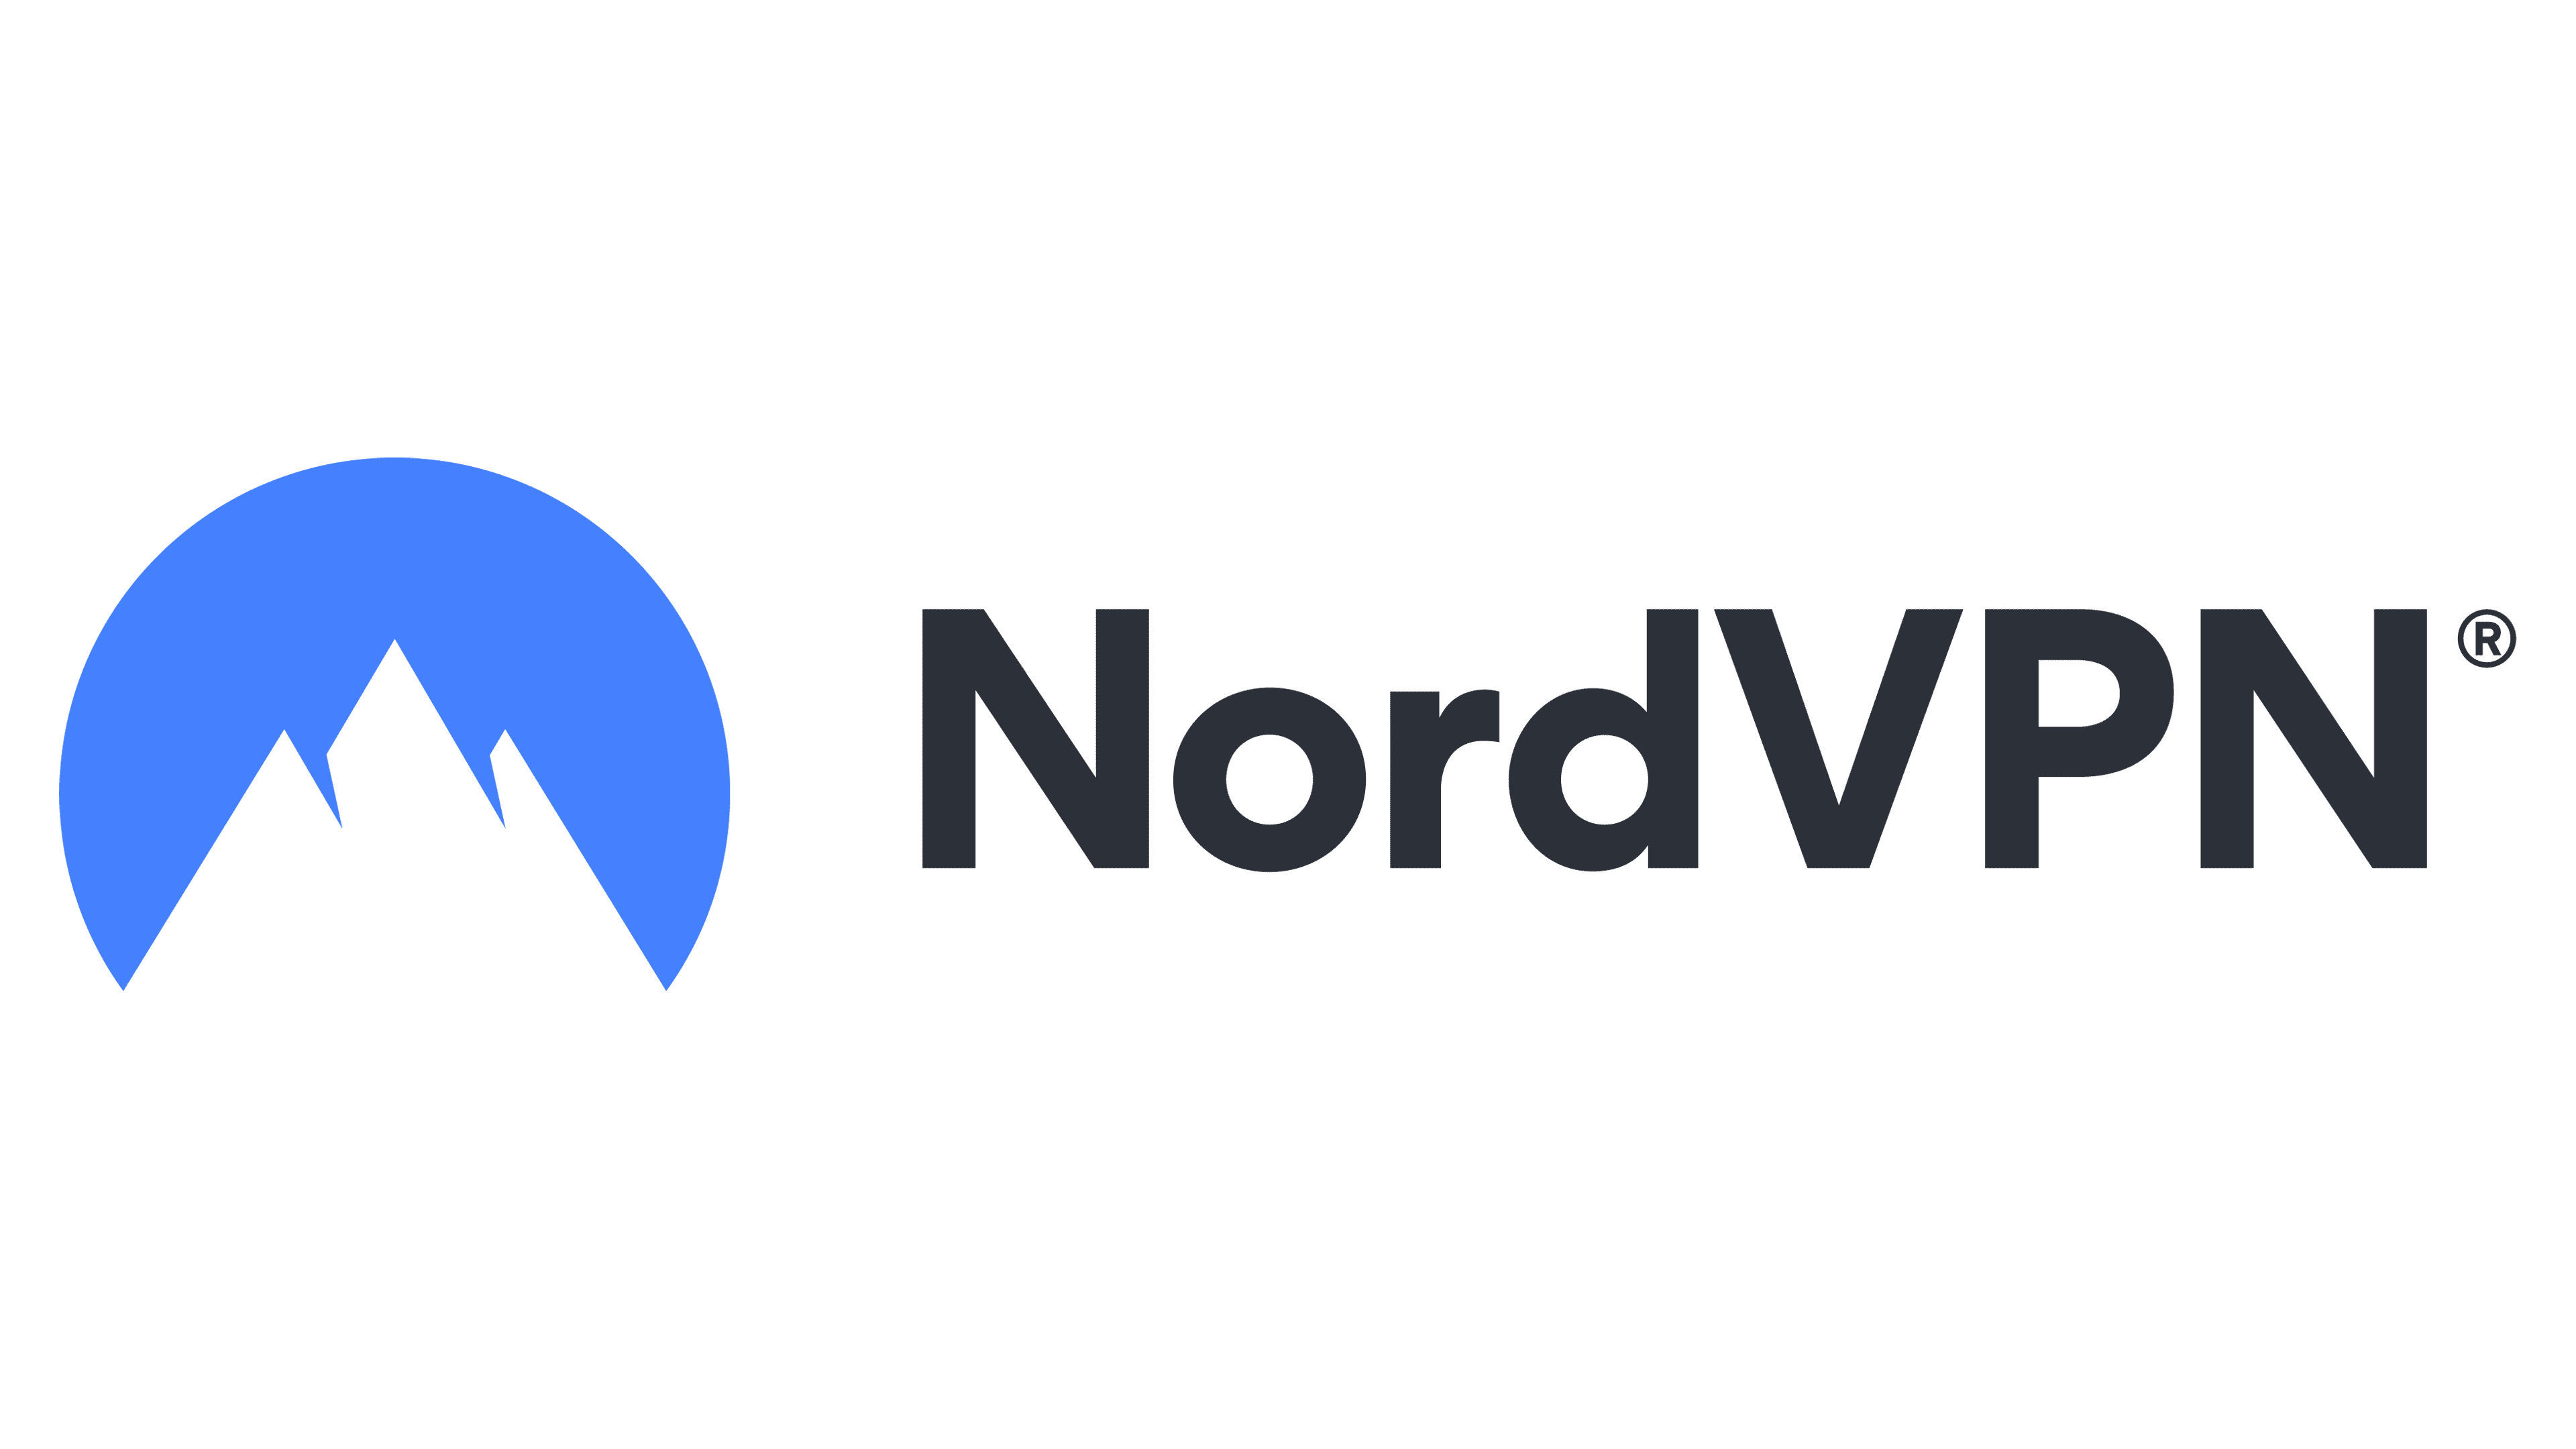 NordVPN 2 Year 68% Offer